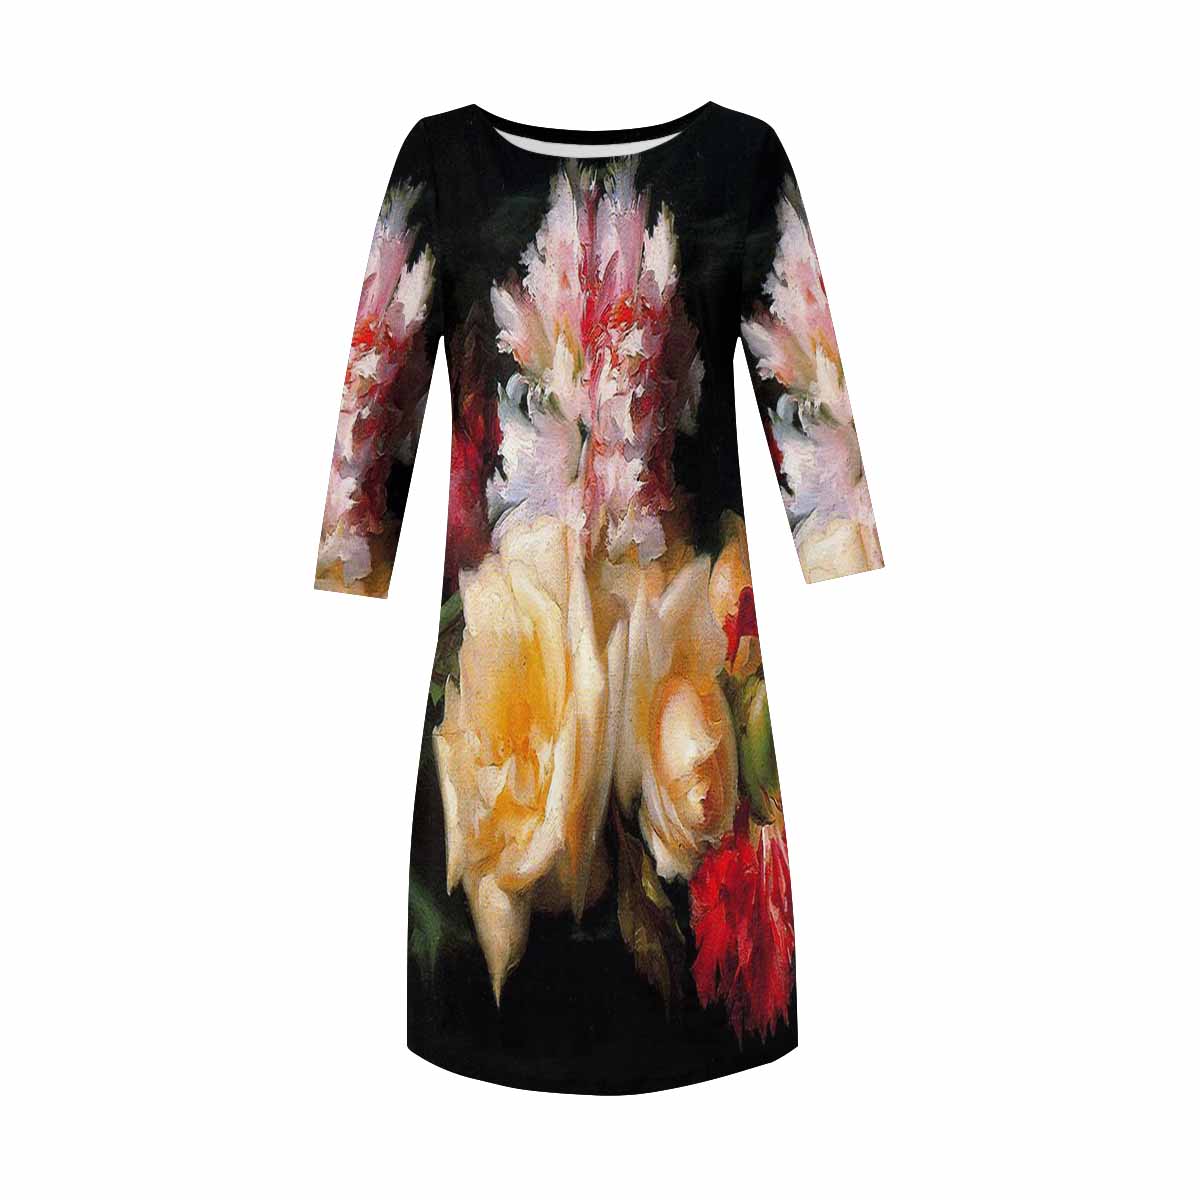 Vintage floral loose dress, model D29532 Design 30